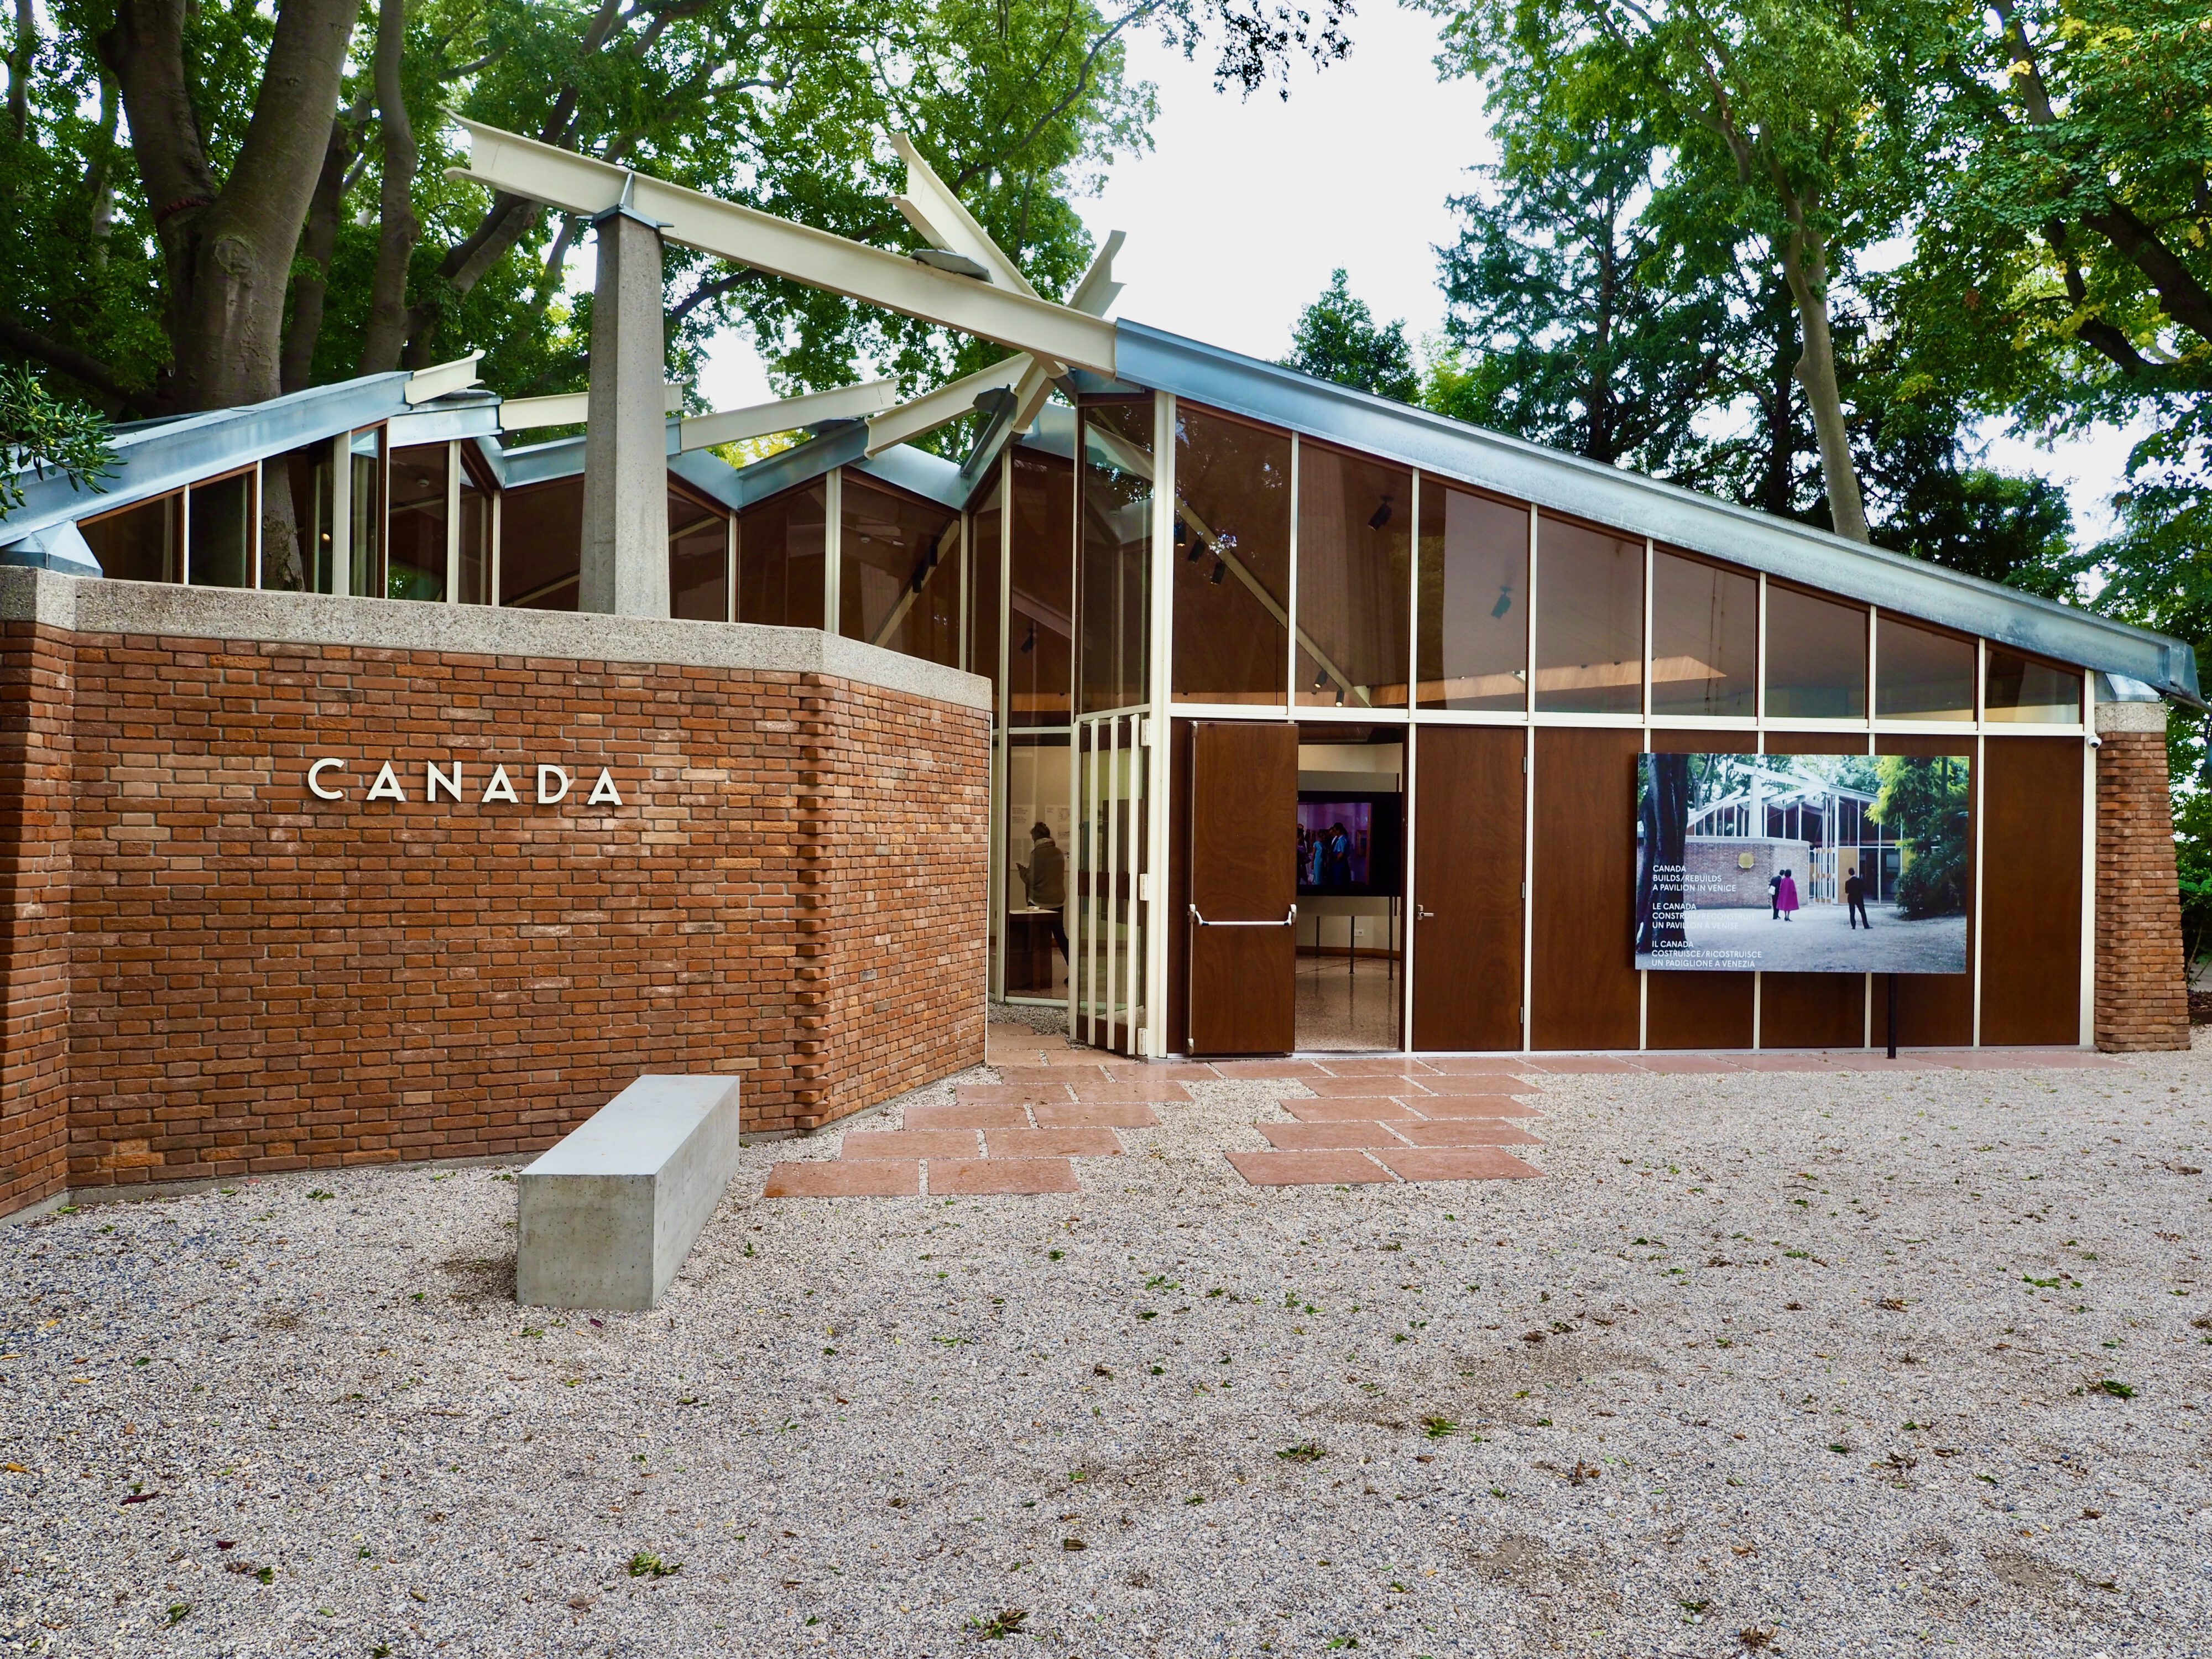 Giardini della Biennale - Canadian Pavillon